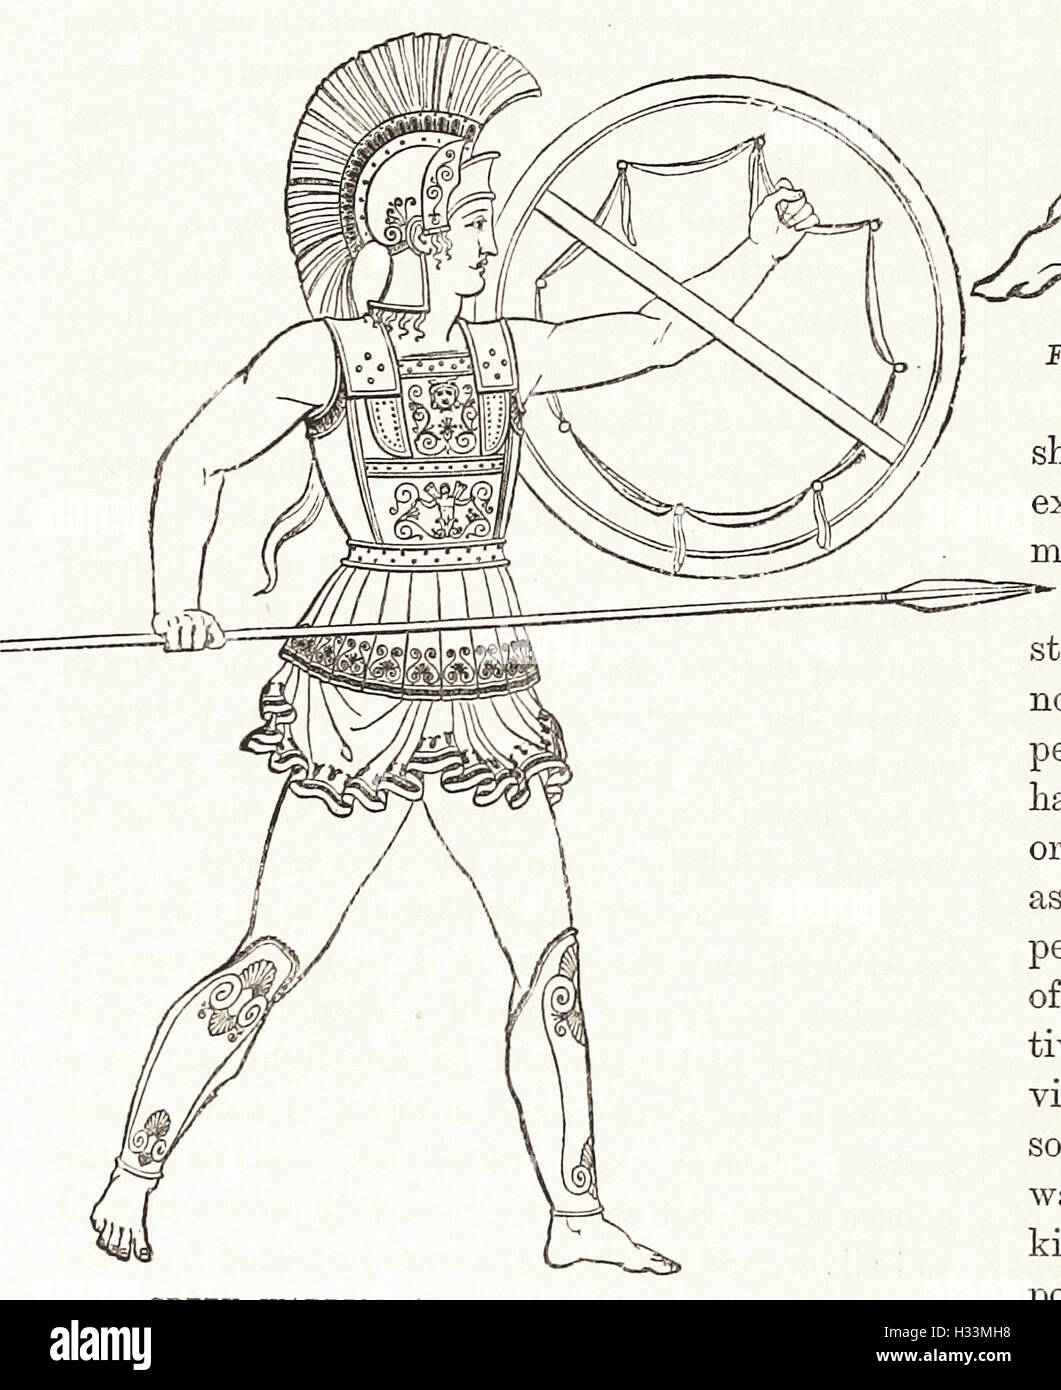 Guerrier grec armés de lance et le bouclier - de 'Cassell's Illustrated Histoire universelle" - 1882 Banque D'Images